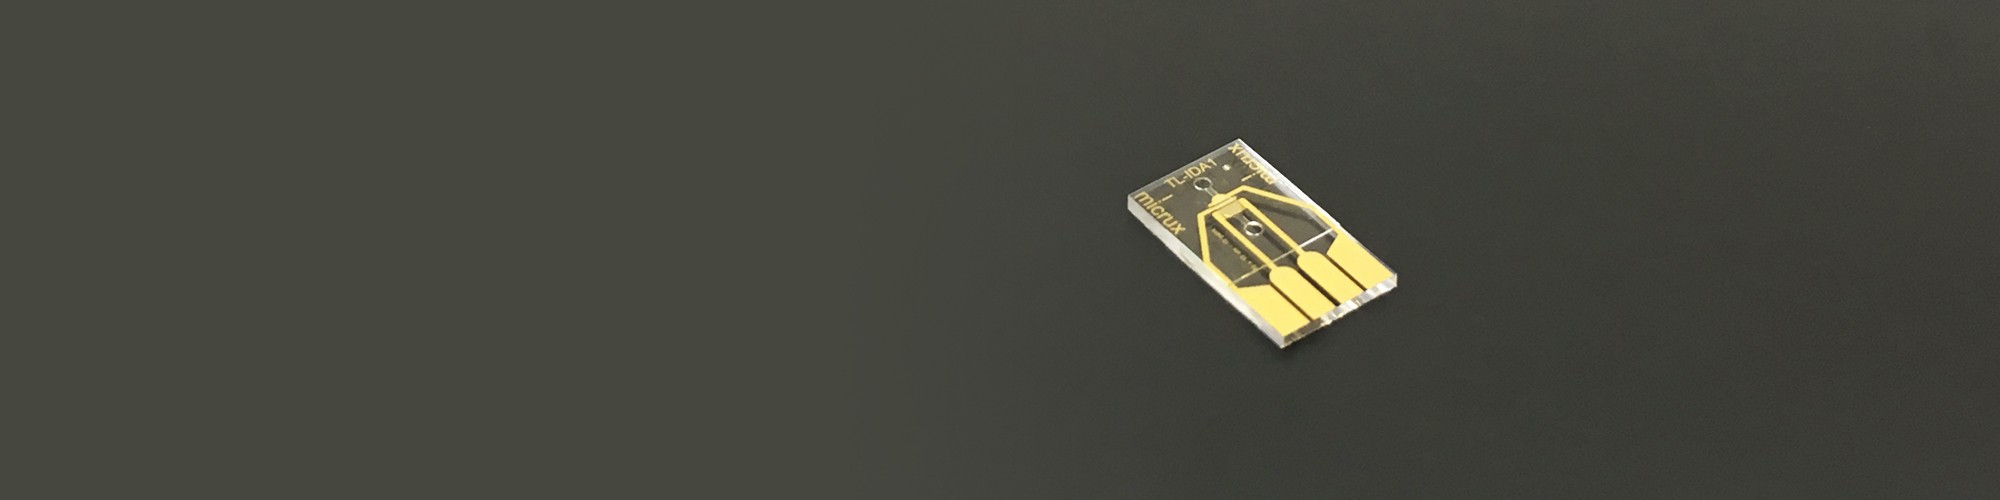 Sensores Microfluídicos InterDigitados